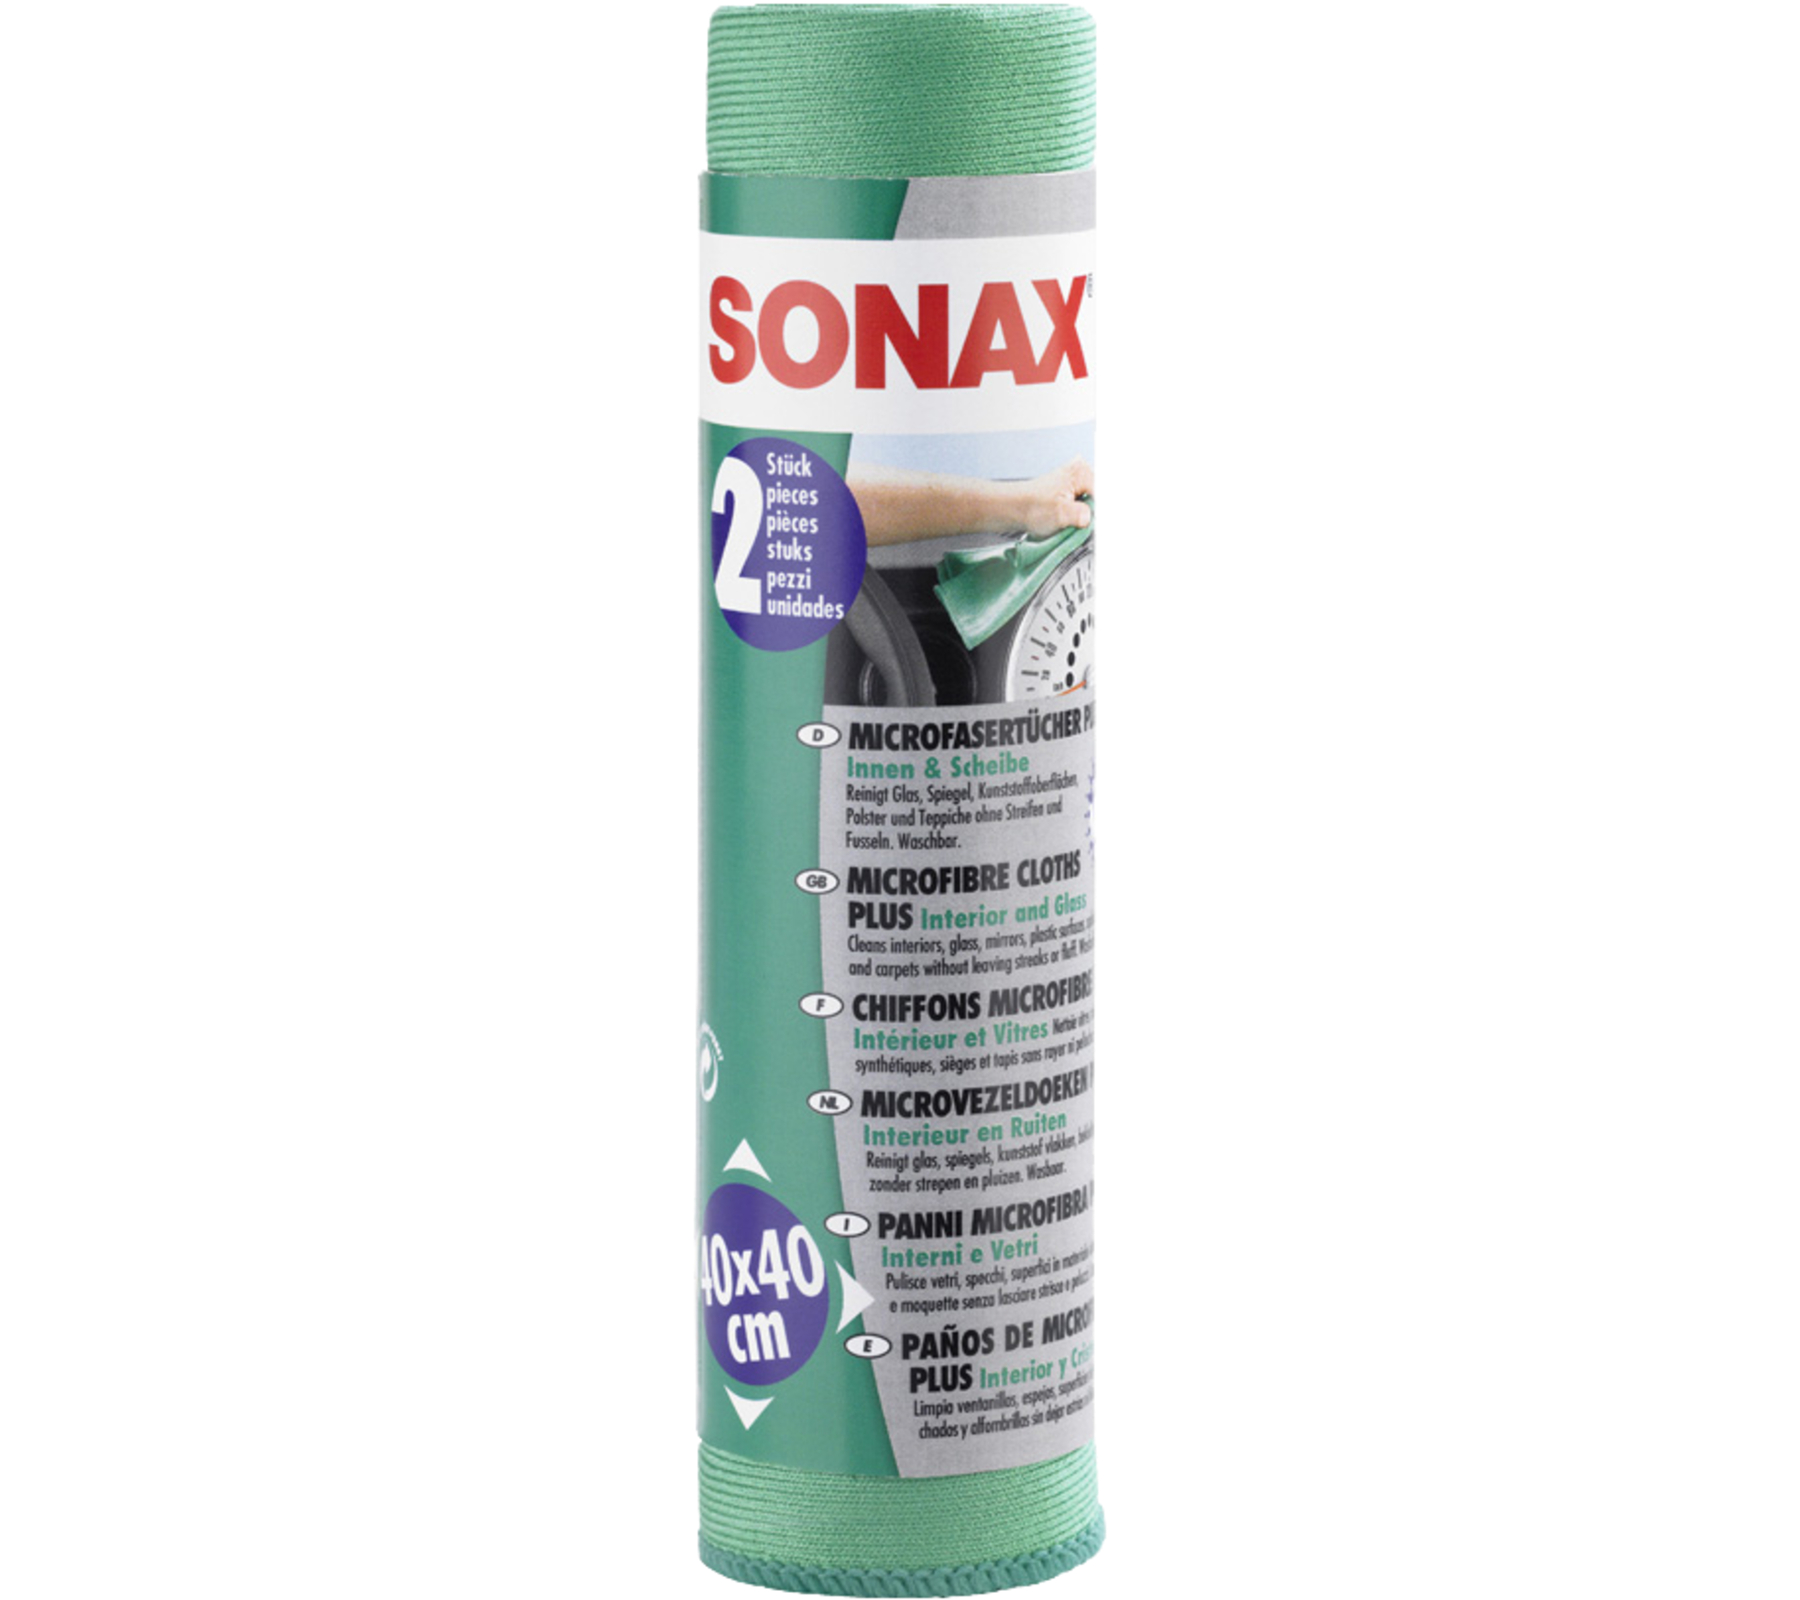 SONAX Microfasertücher PLUS Innen und Scheibe 2 Stk.